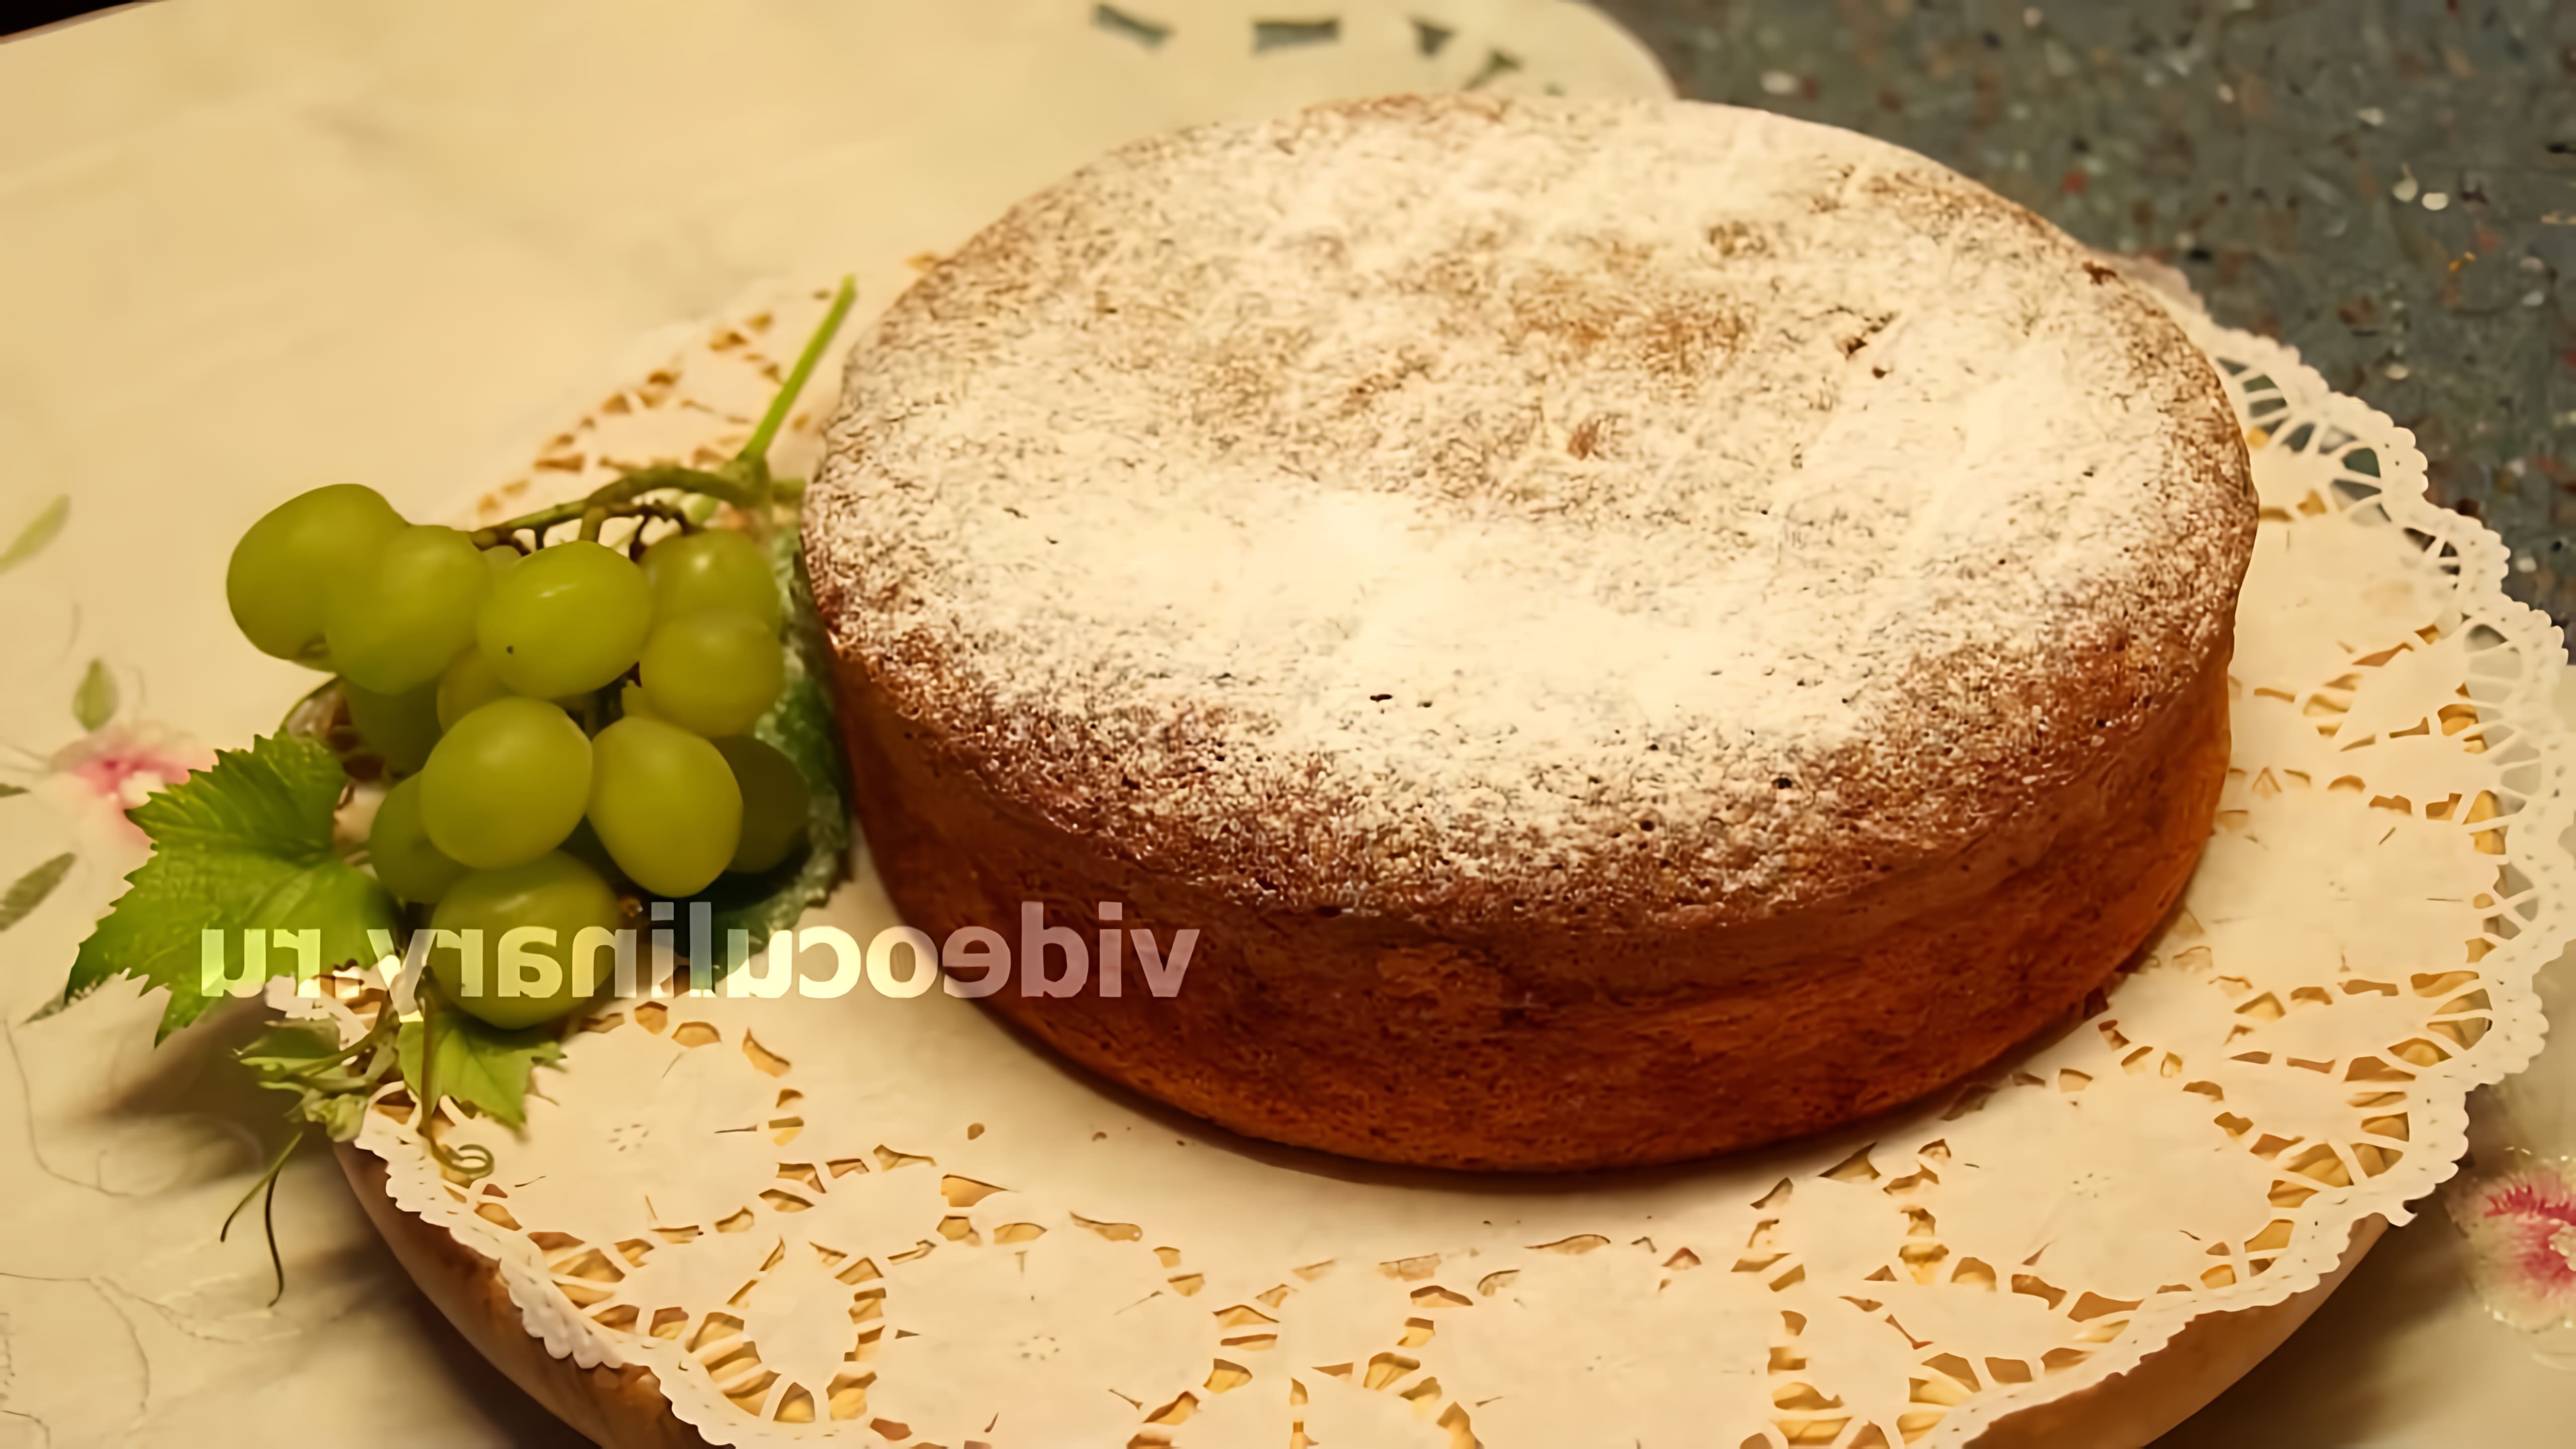 В этом видео демонстрируется рецепт приготовления бисквита от бабушки Эммы